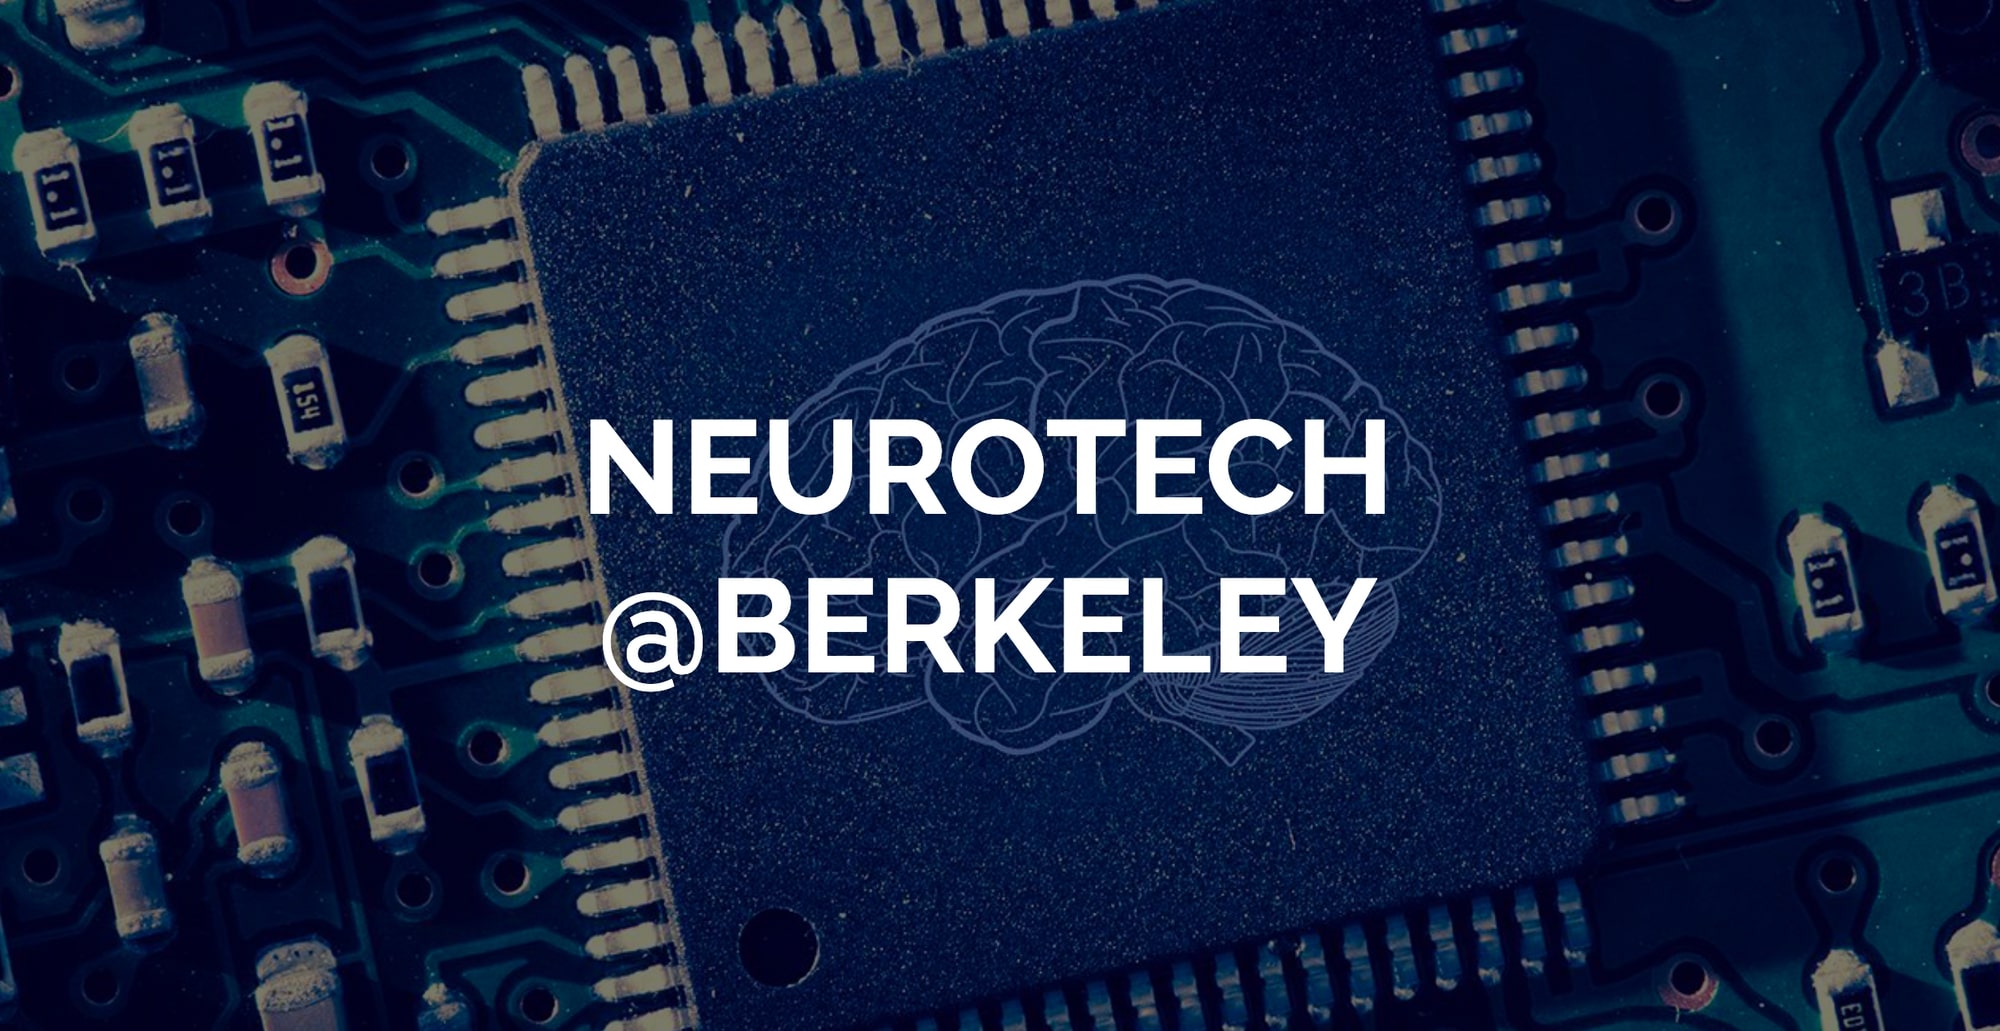 Neurotech Berkeley